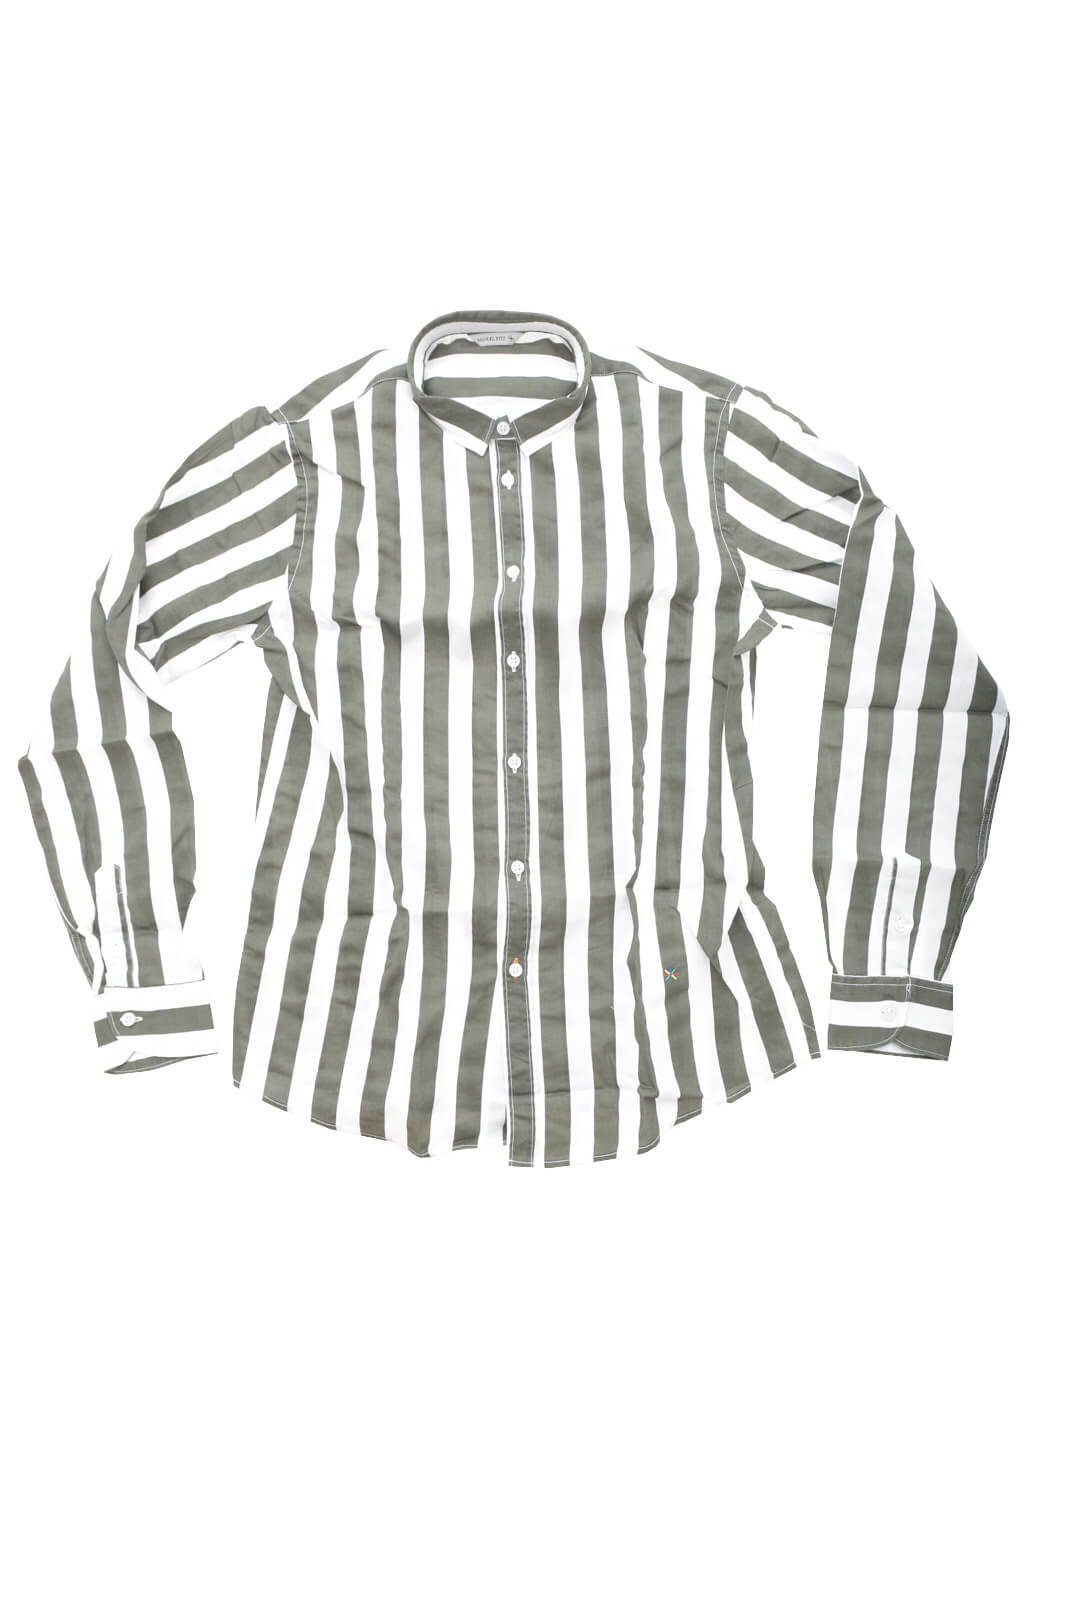 Manuel Ritz Striped children's shirt